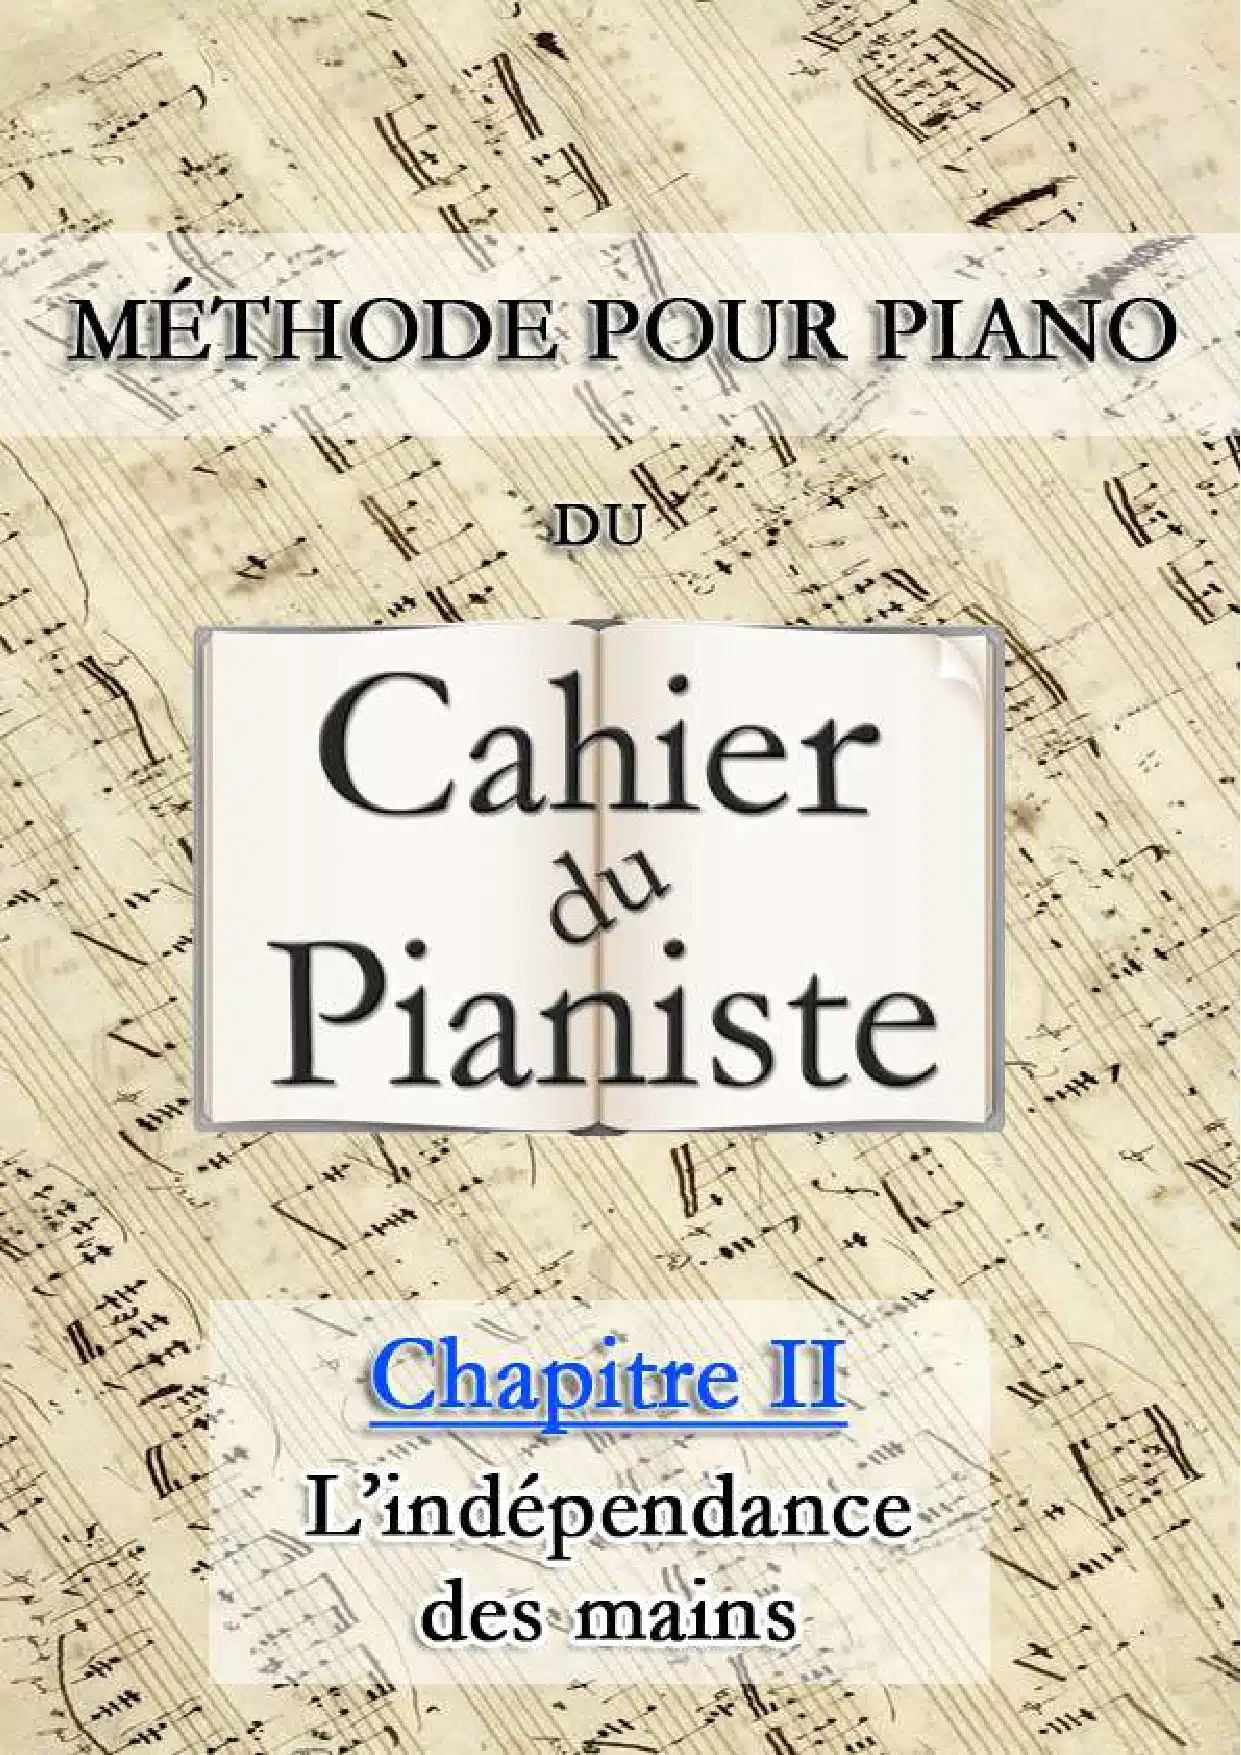 Apprendre le piano - Méthode du cahier du pianiste - Chapitre 1 -  Avant-propos & Partie 1 